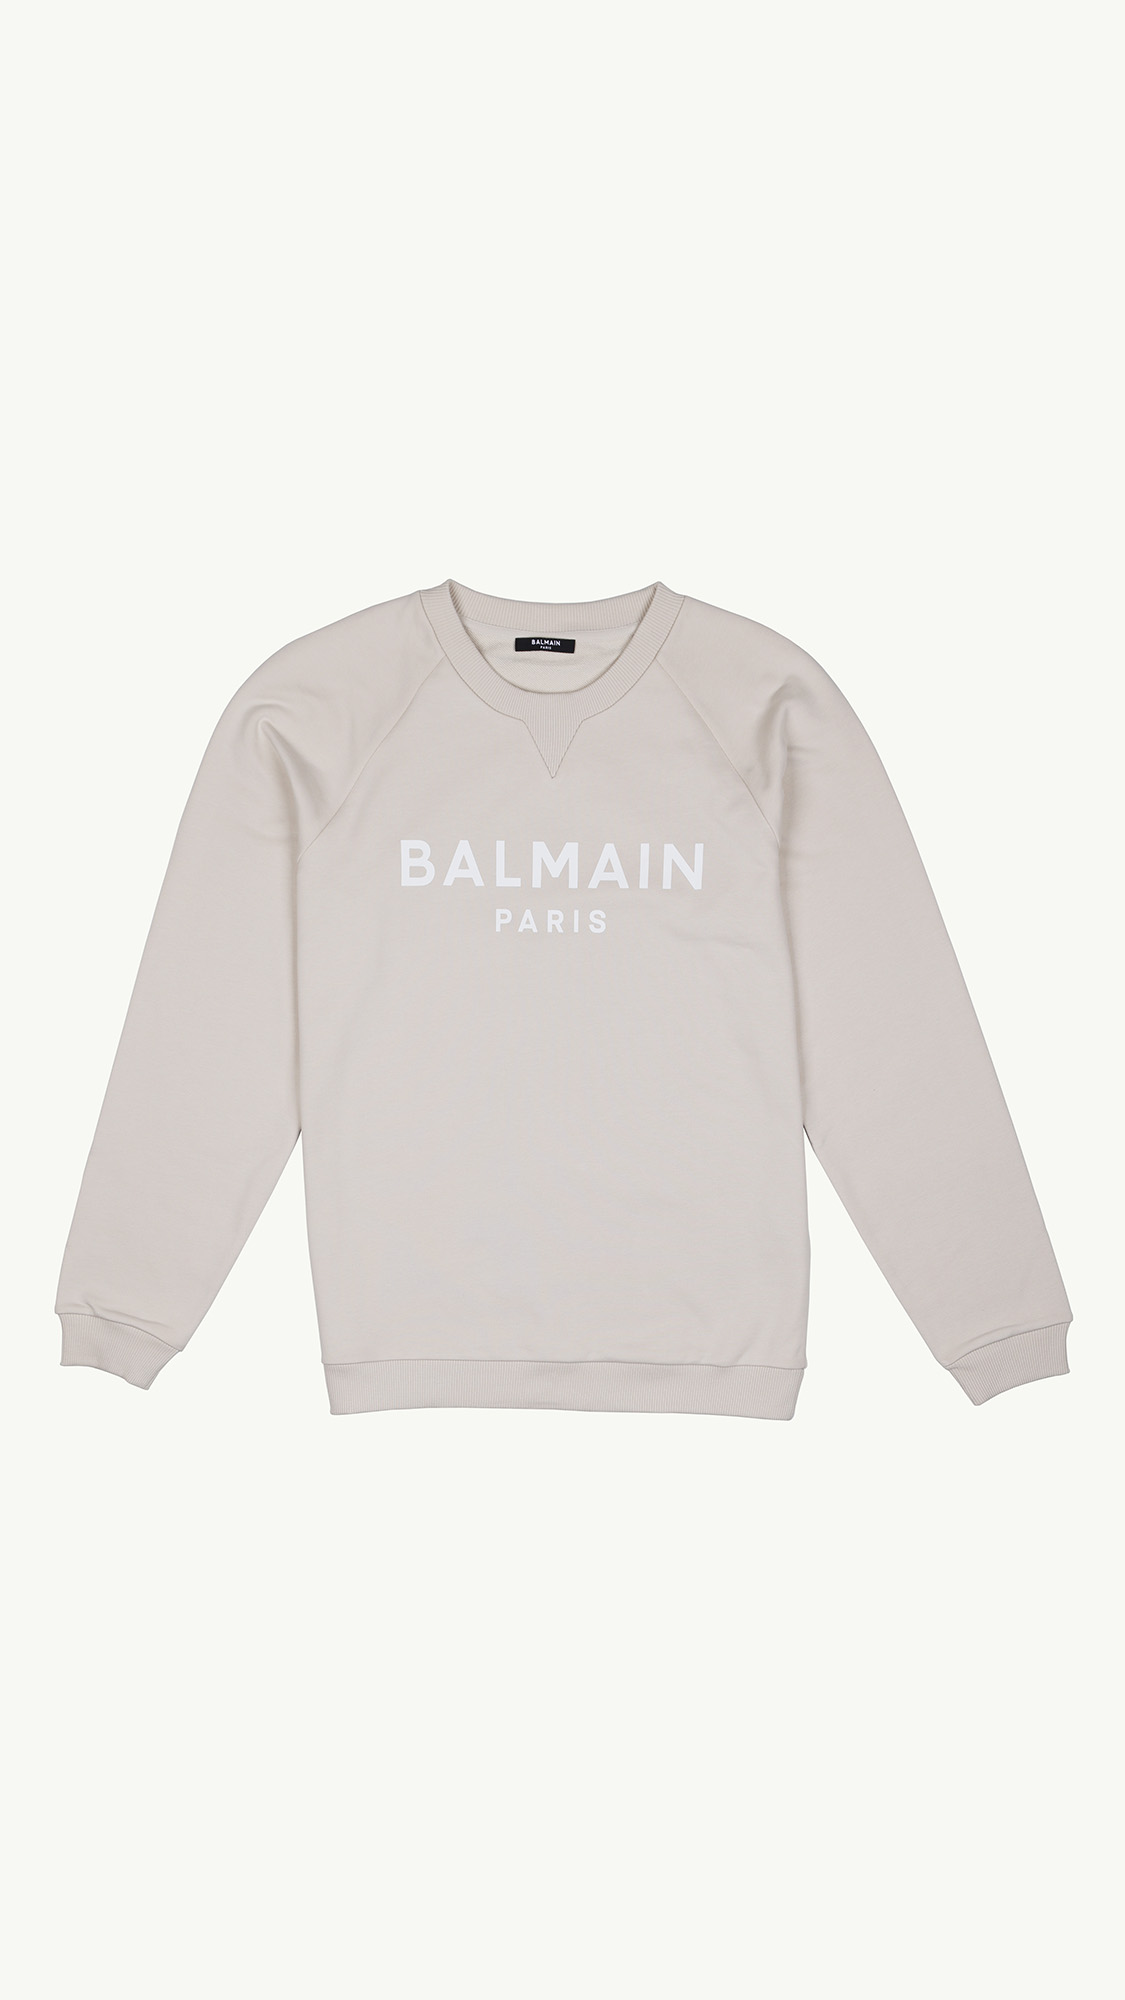 BALMAIN Women Balmain Paris Flocked Logo Sweatshirt in Beige/White 0